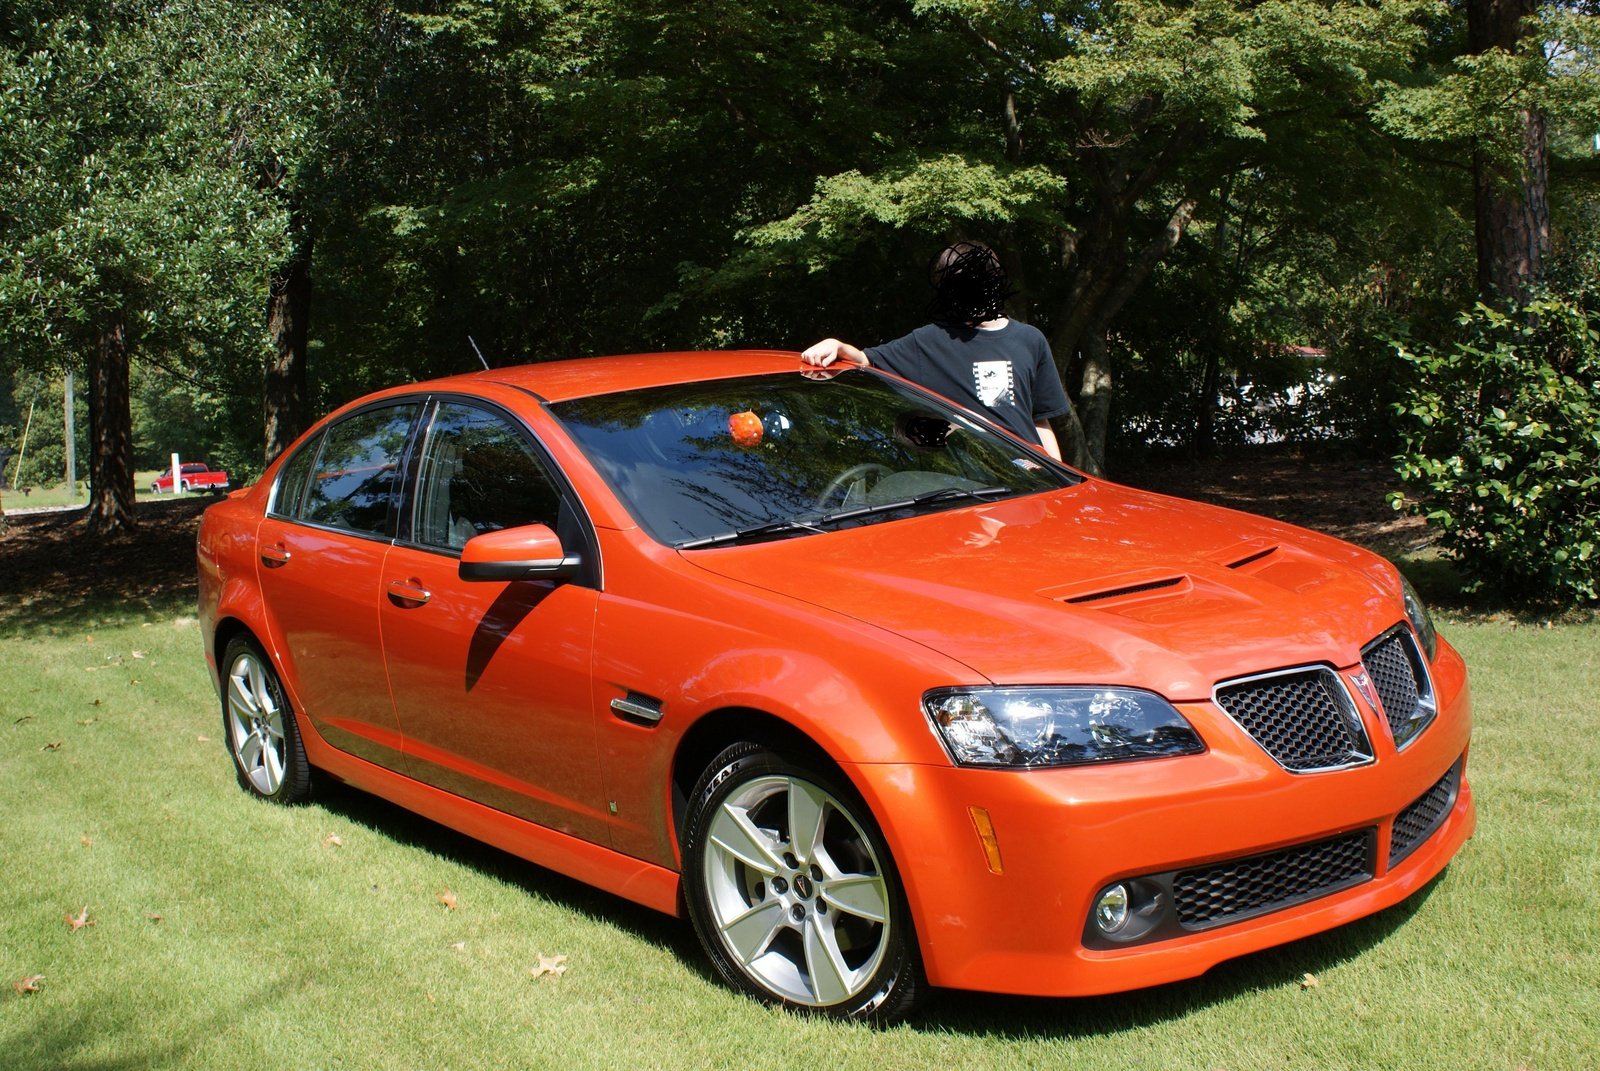 2008 Pontiac g8